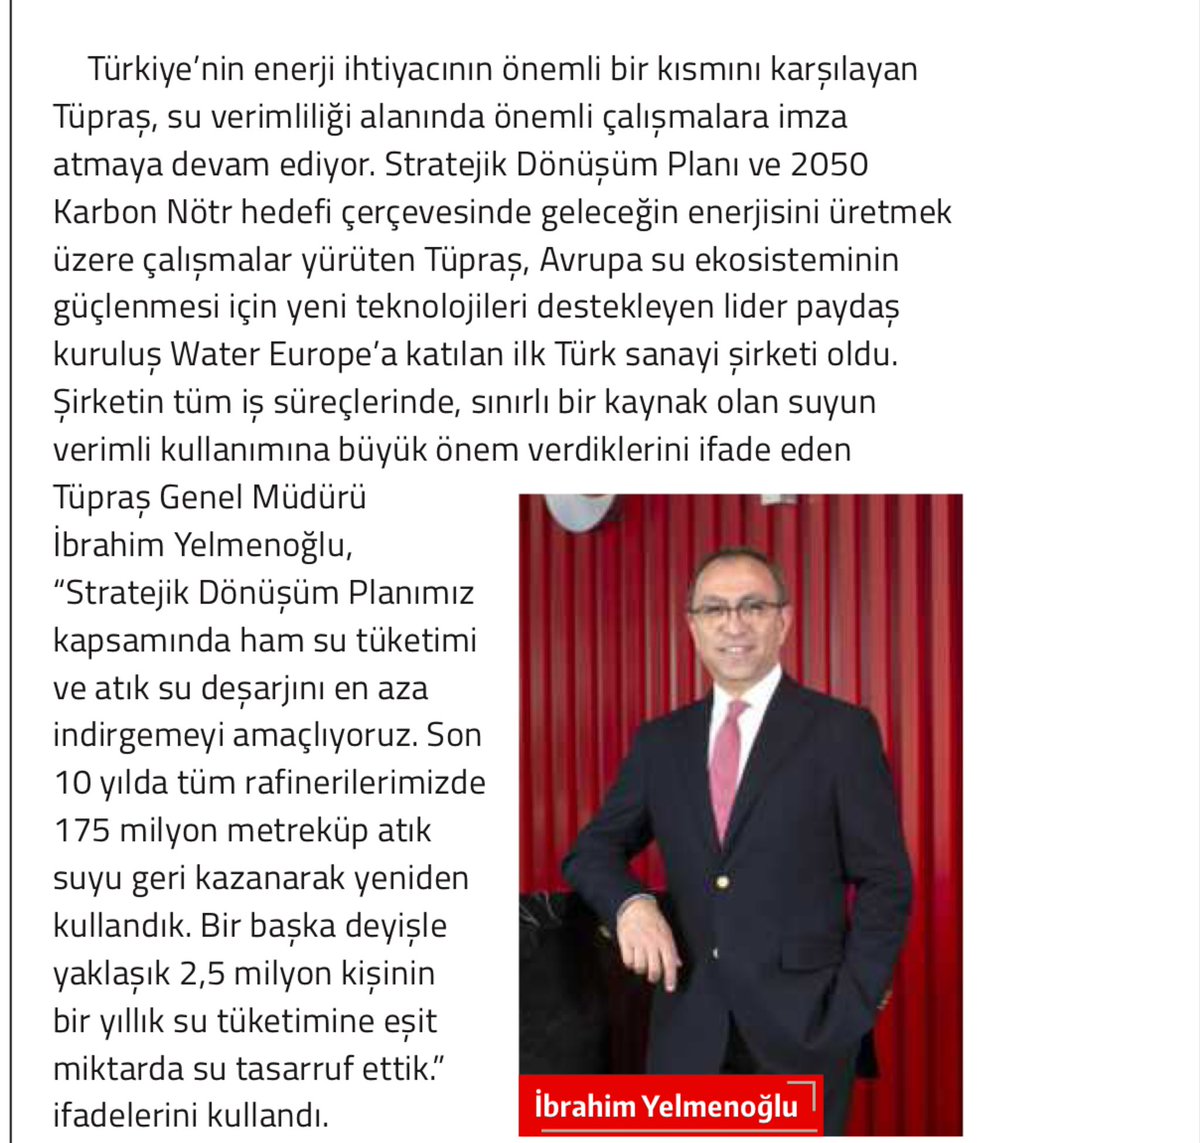 🗣 Arçelik sürdürülebilirliğe ilham veriyor: #ARCLK

🗣 Tüpraş, Water Europe’a üye olan ilk Türk sanayi şirketi oldu: #TUPRS